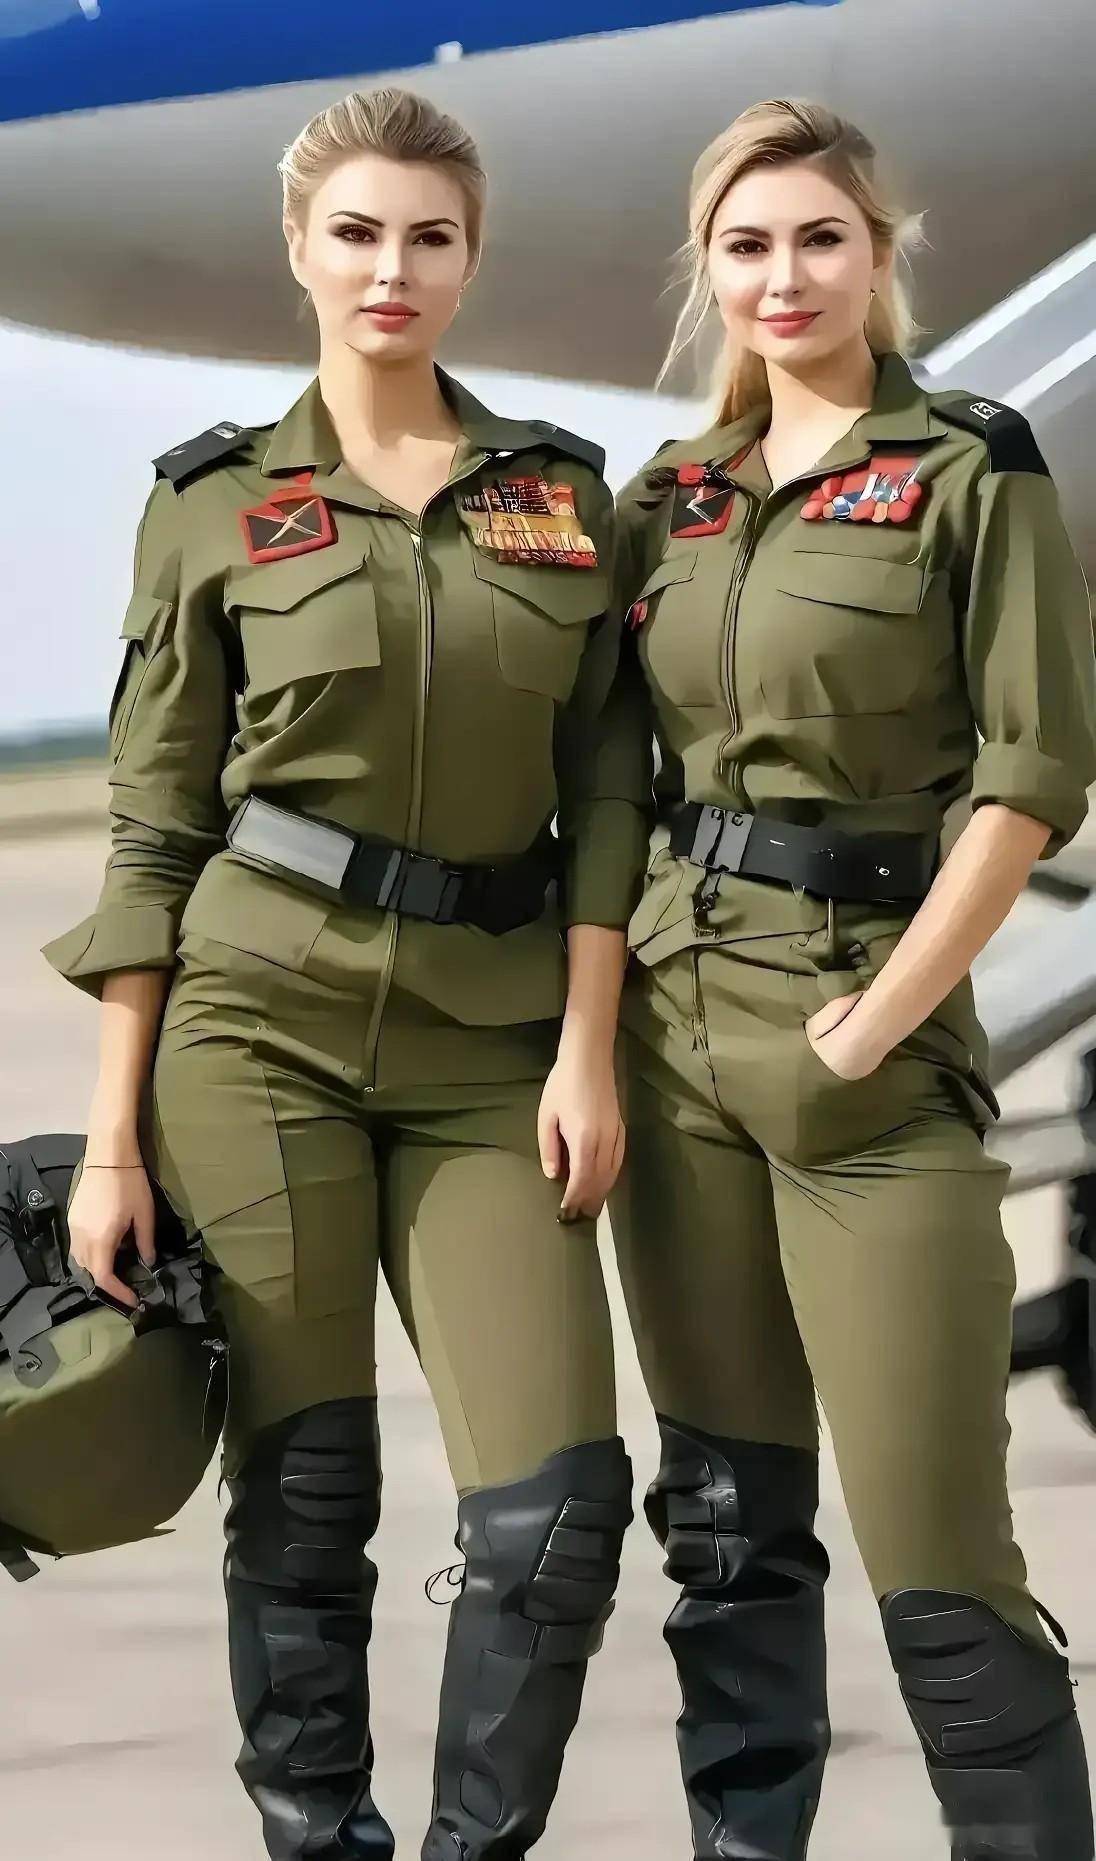 以色列美女女兵:身材高挑美如花,晚上可去兼职,被俘易遭受凌辱